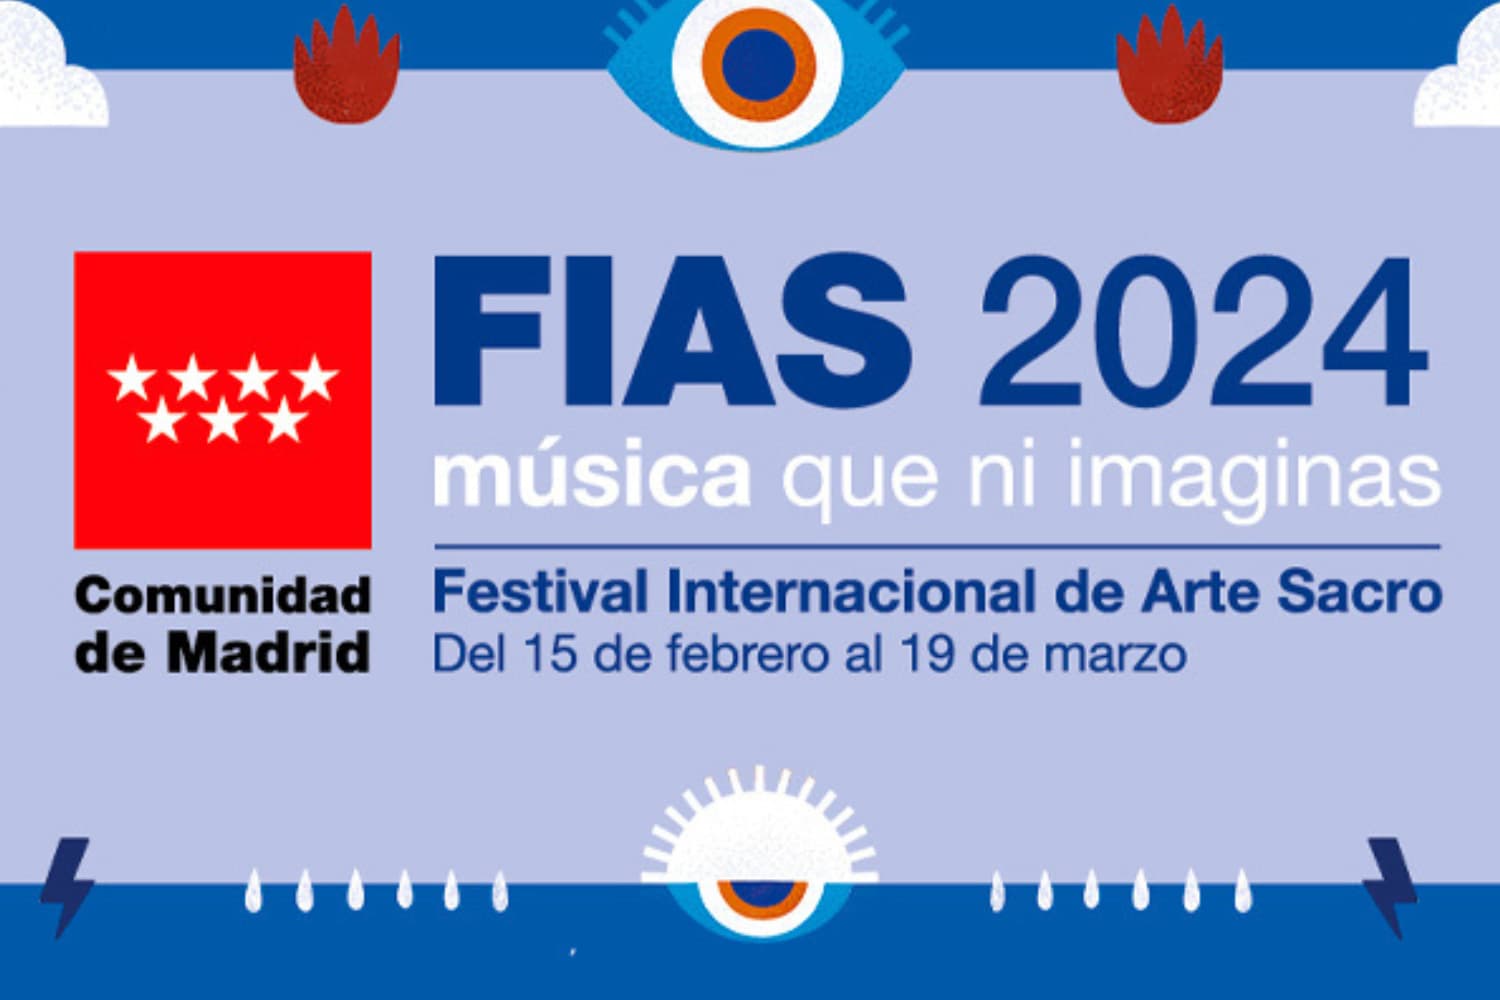 Llega la 34ª edición del Festival Internacional de Arte Sacro (FIAS) 